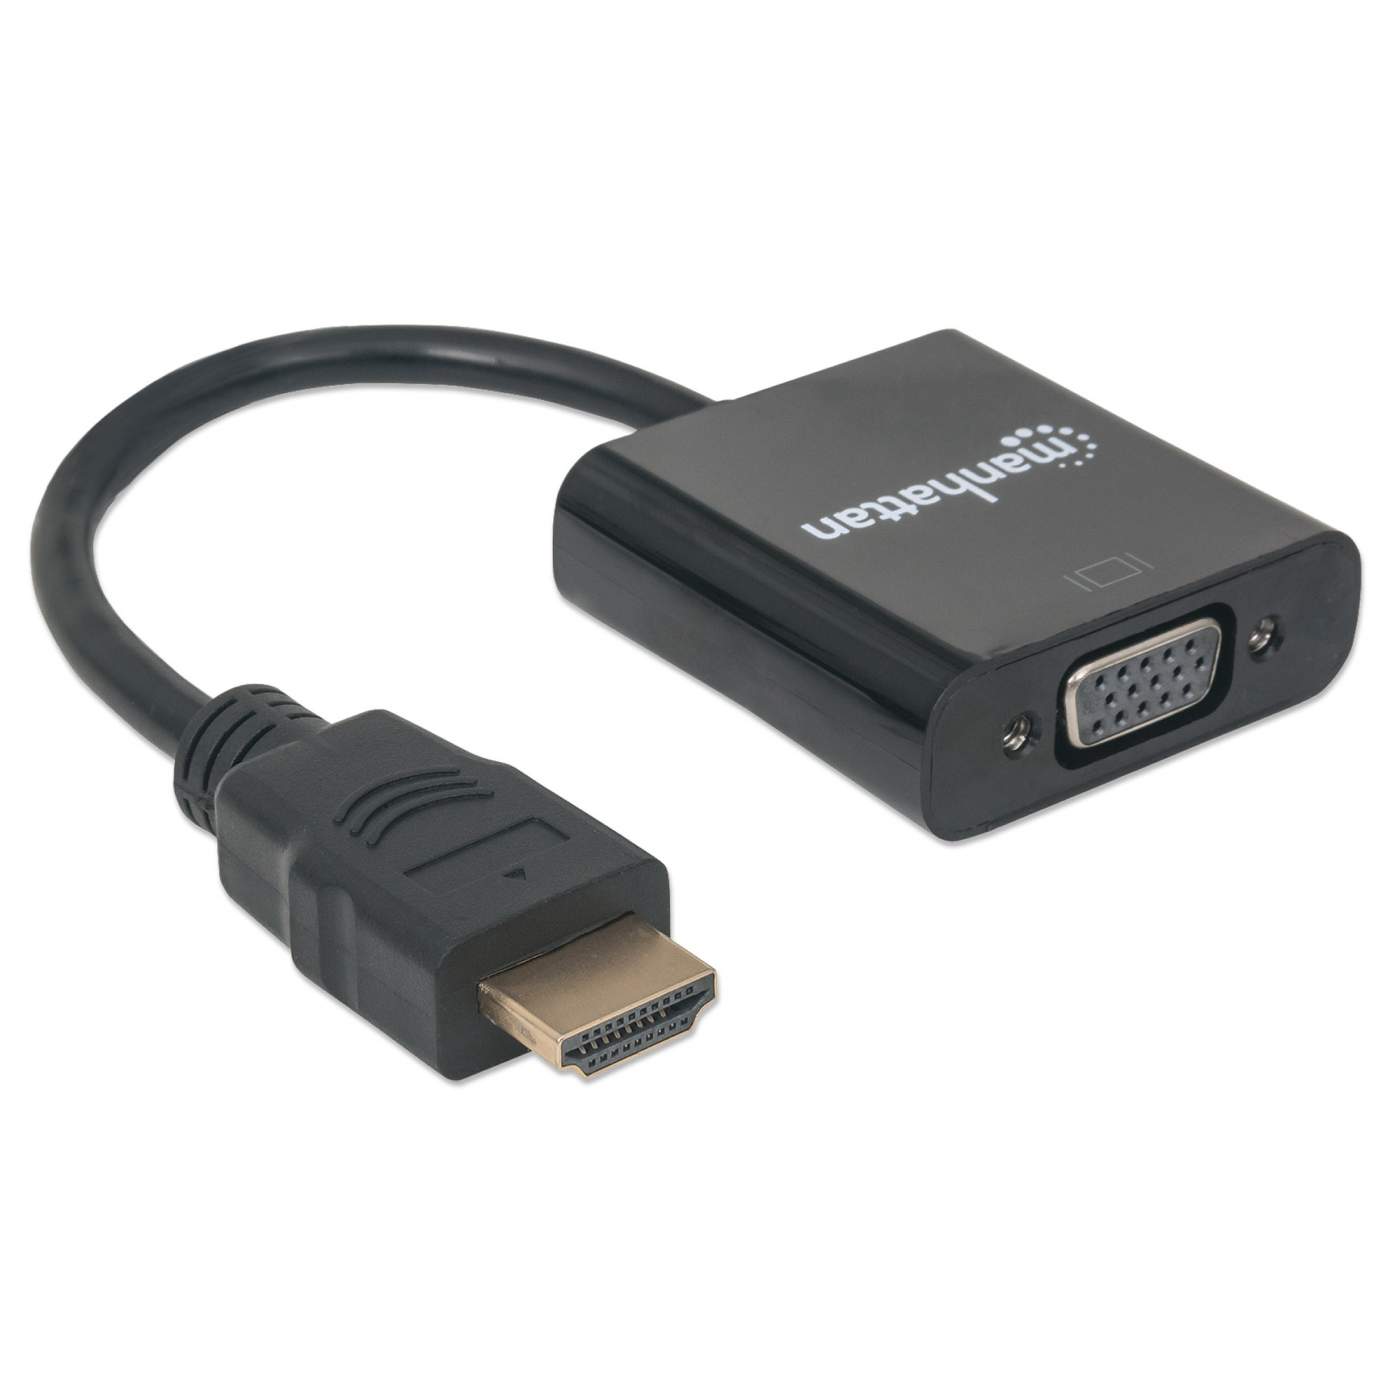 Adaptador VGA a HDMI; Adaptadores de Video